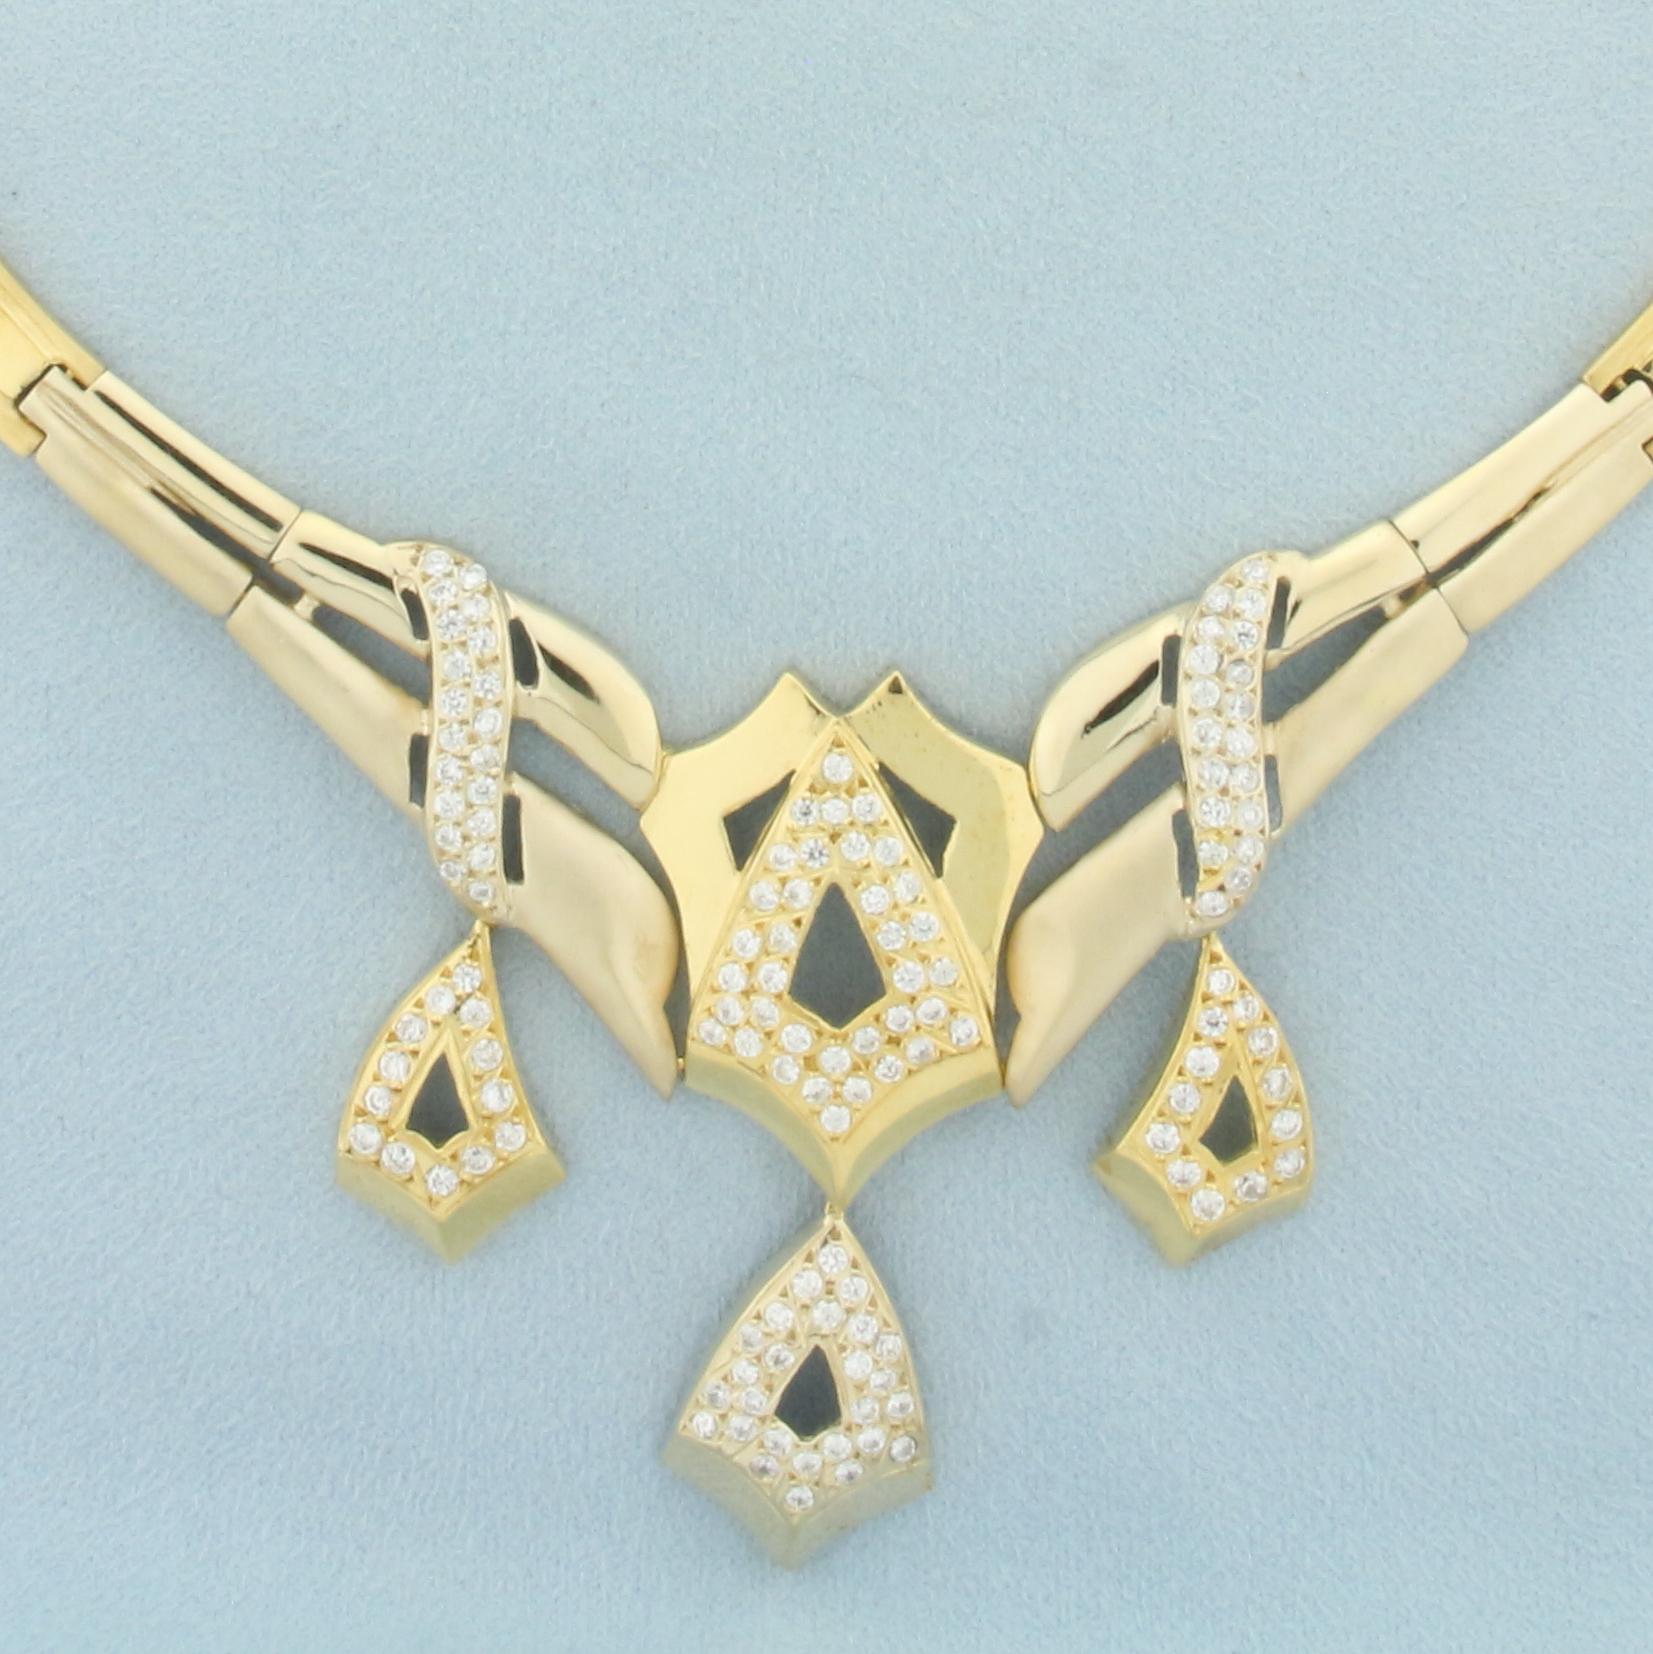 5 Piece Jewelry Set Ring Earrings Necklace Bracelet In 18k Yellow Gold